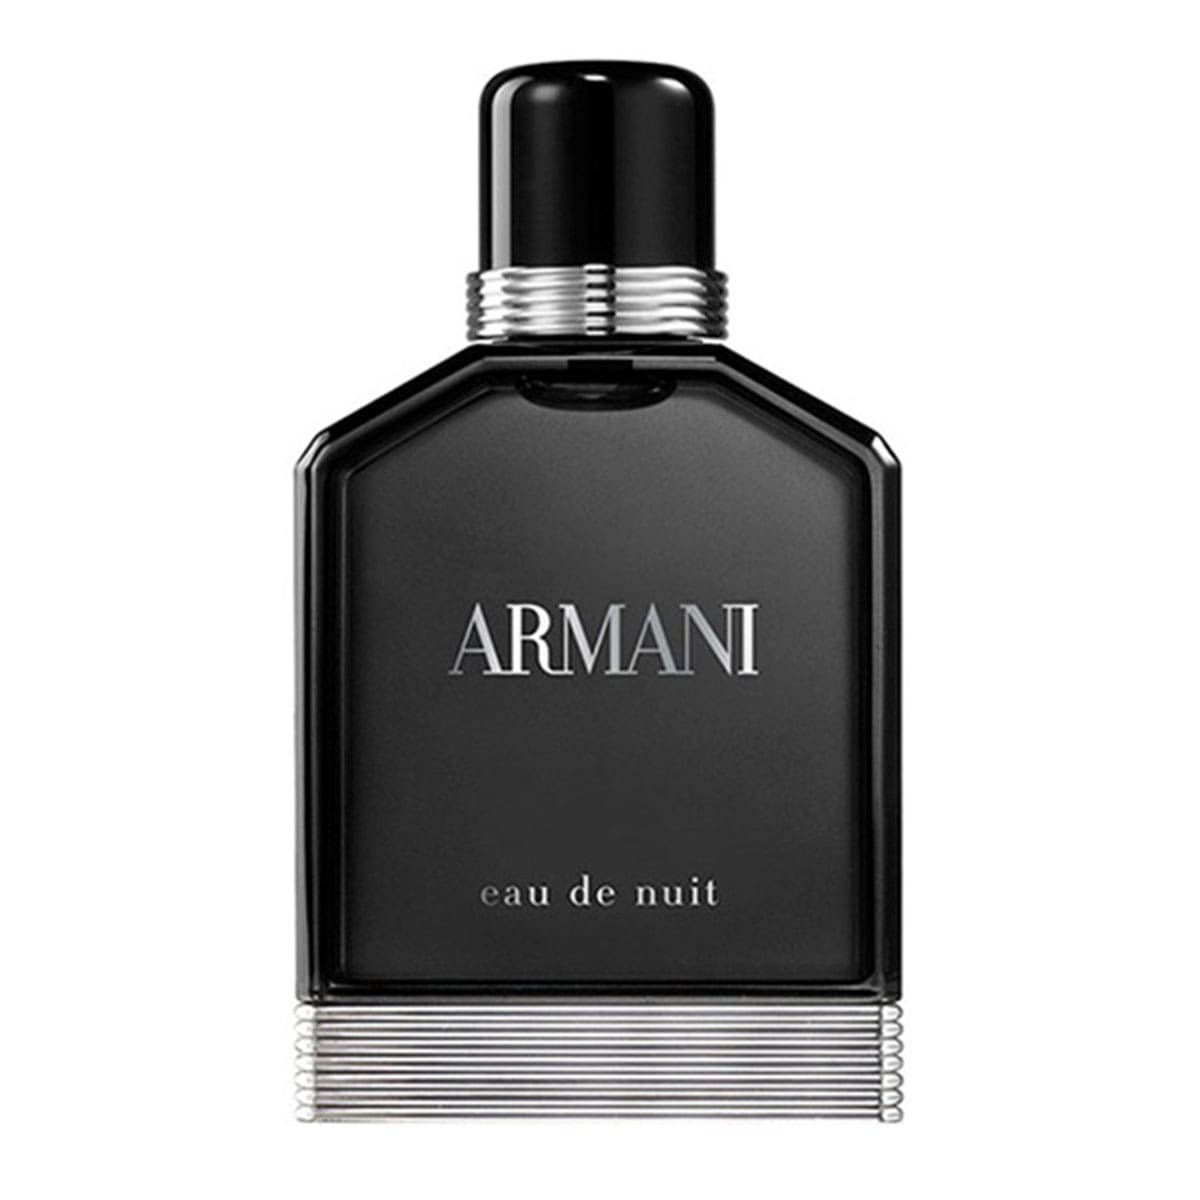 Giorgio Armani Eau De Nuit Pour Homme Edt For Men 100 ml-Perfume - Allurebeautypk